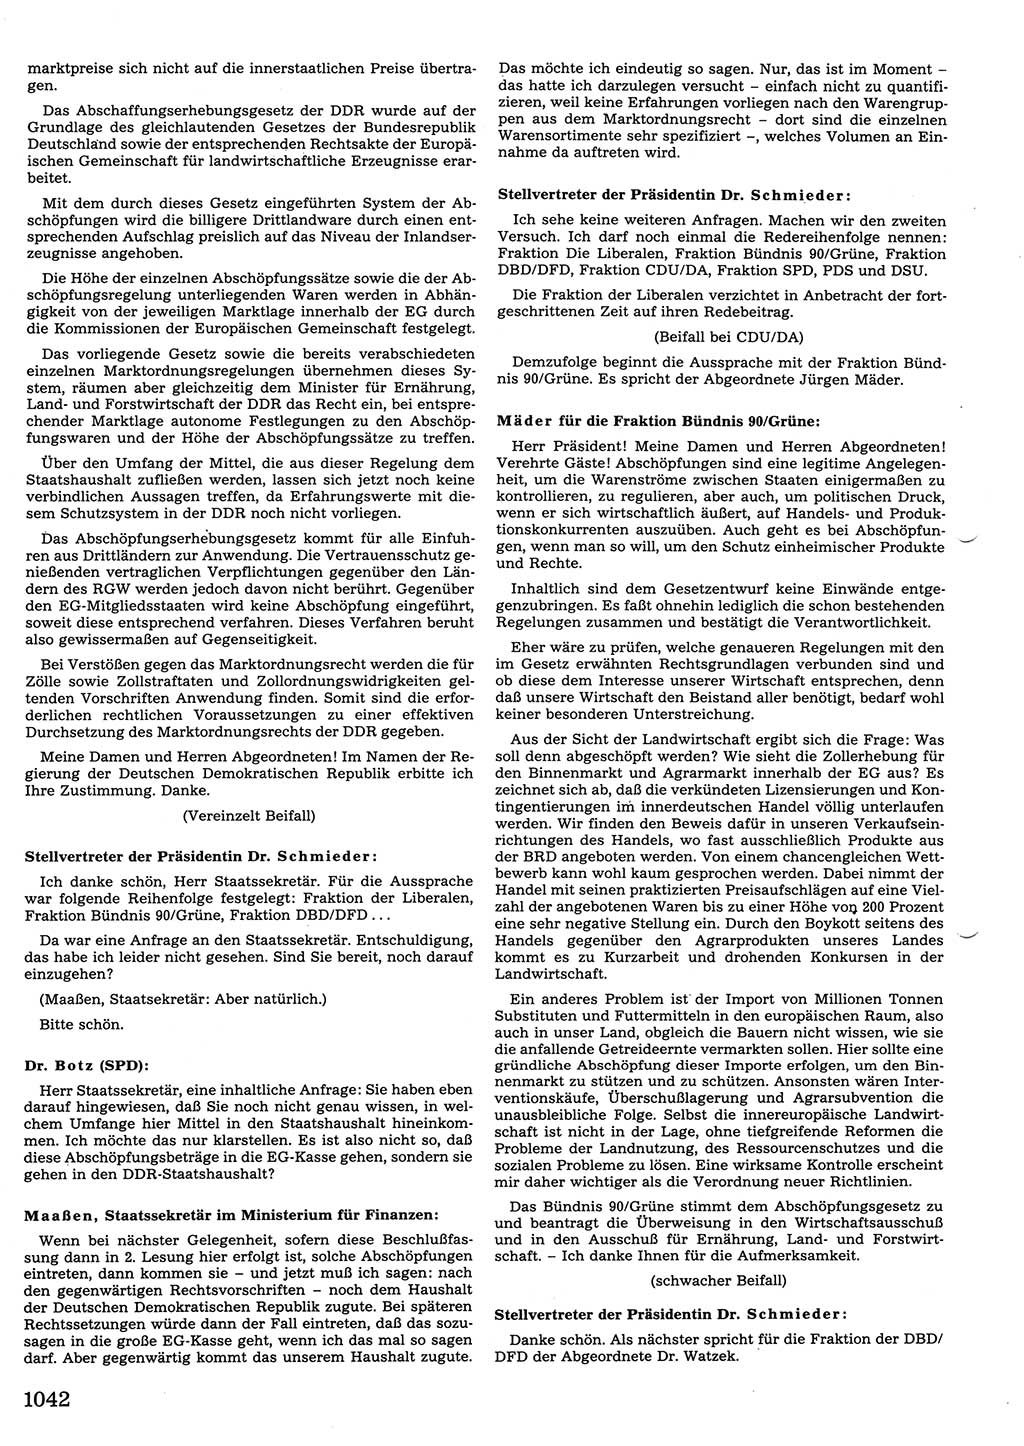 Tagungen der Volkskammer (VK) der Deutschen Demokratischen Republik (DDR), 10. Wahlperiode 1990, Seite 1042 (VK. DDR 10. WP. 1990, Prot. Tg. 1-38, 5.4.-2.10.1990, S. 1042)